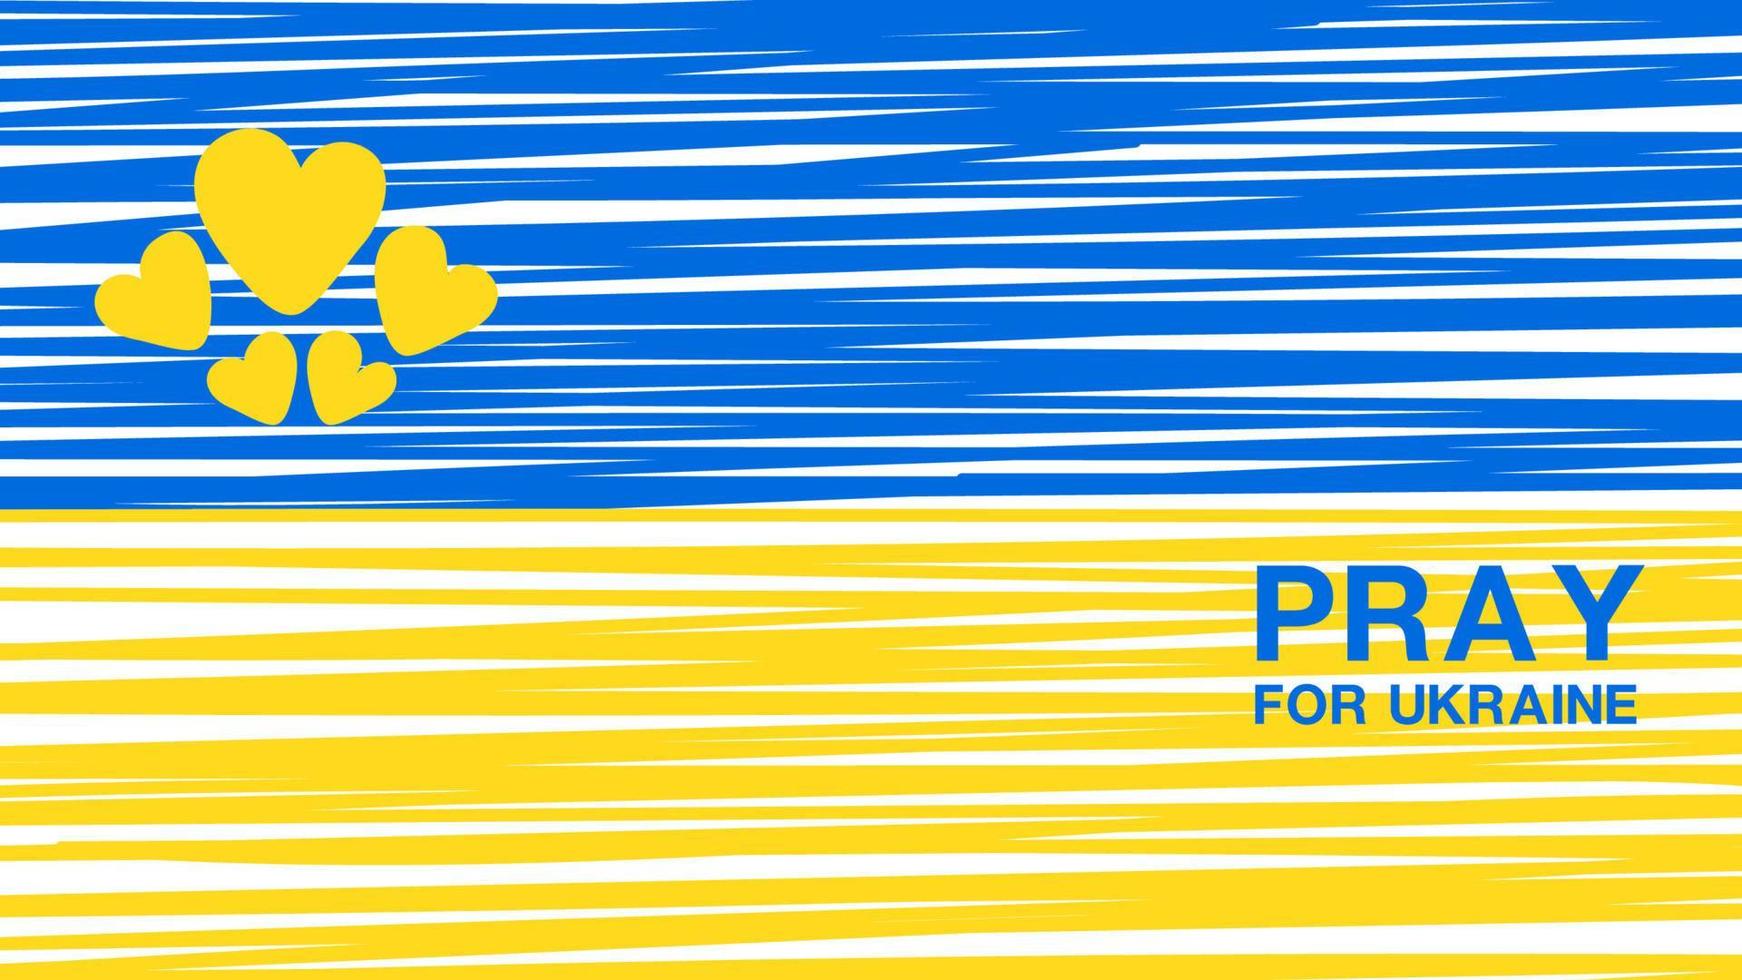 be för Ukraina på flaggpolygonbakgrund, ukrainska flaggpolygonstruktur, inget krig i Ukraina-konceptet, broschyrflyerdesign, blå och gul banderoll, vektorillustration vektor